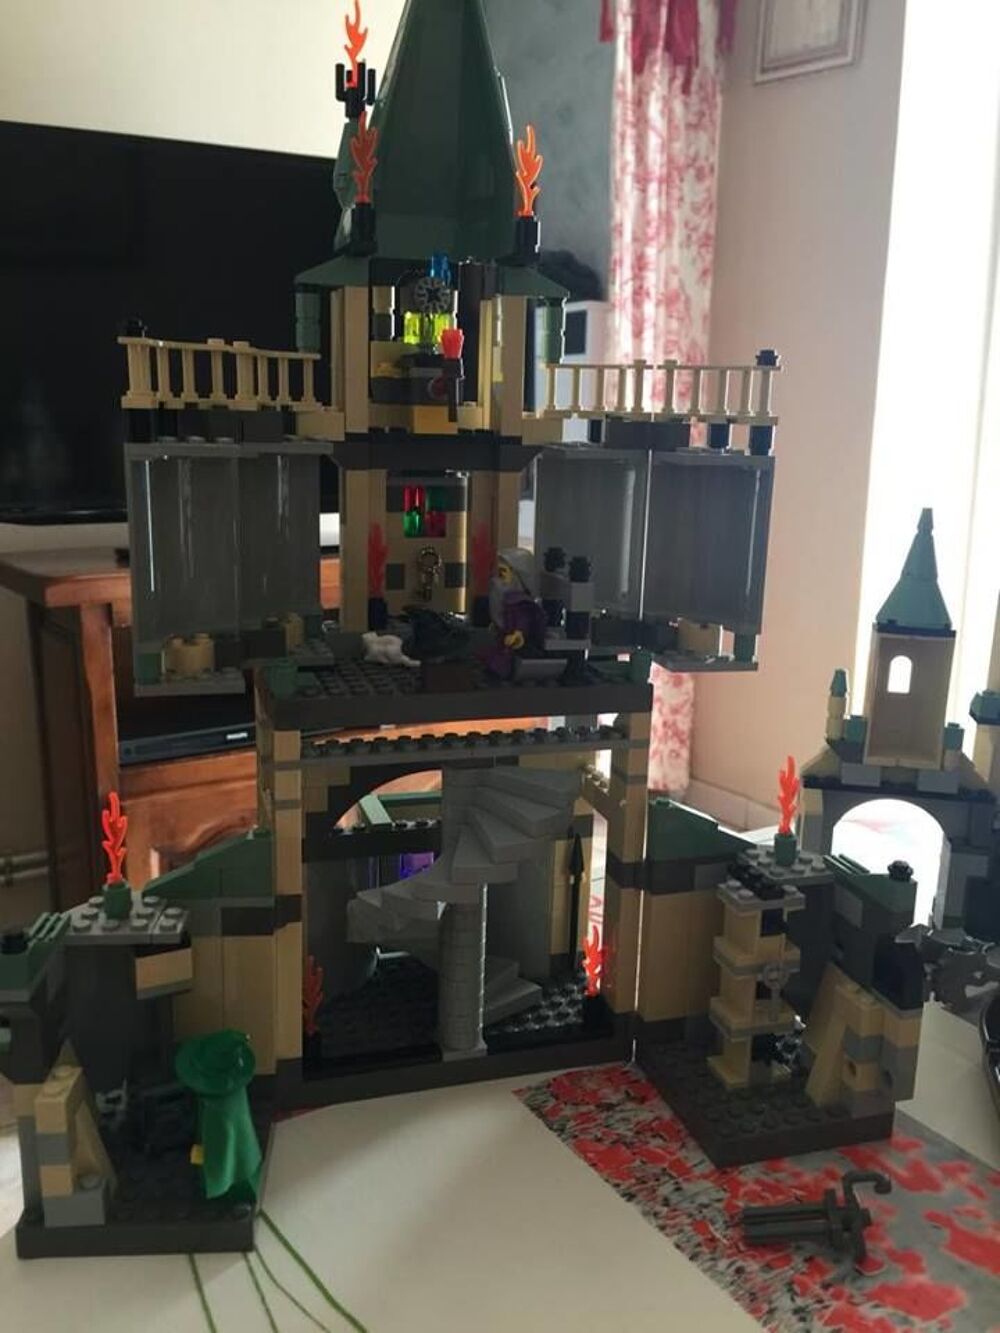 ch&acirc;teau Harry Potter en legos
Jeux / jouets